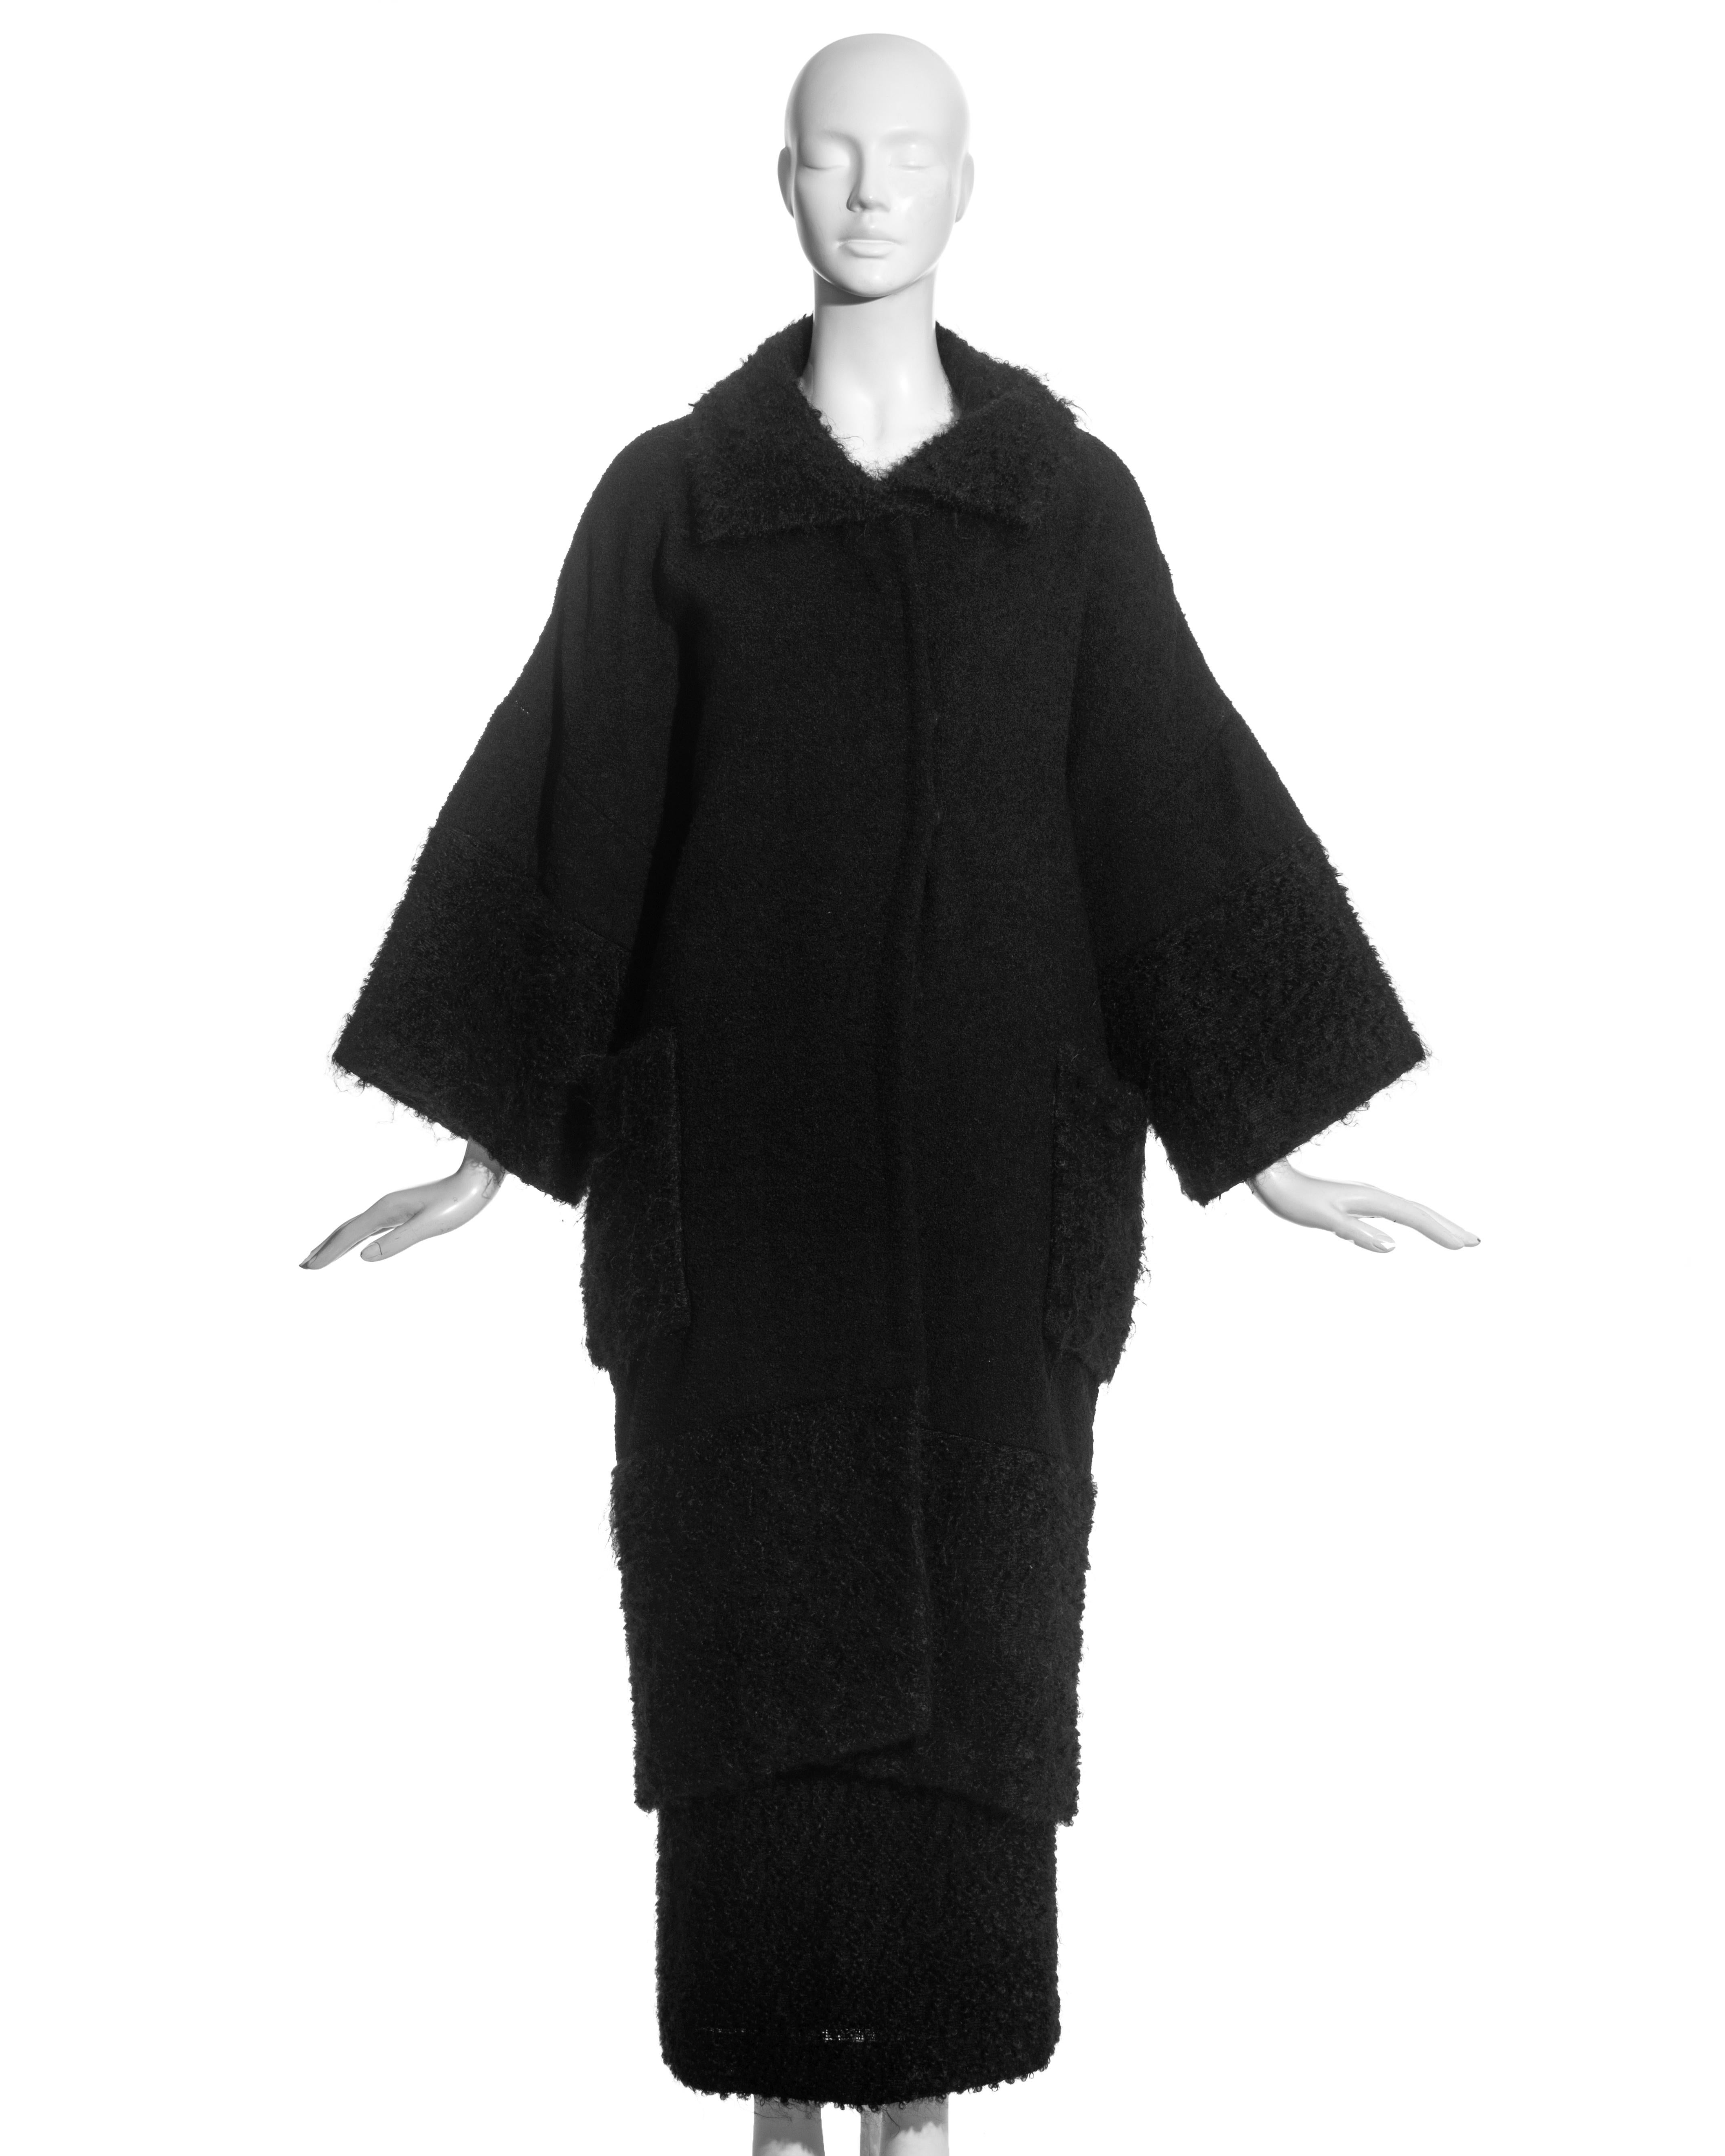 Costume jupe en laine bouclée et mohair noir Christian Dior by John Galliano comprenant : manteau ample à manches larges, deux poches plaquées sur le devant et doublure en soie. Jupe longueur cheville avec grande ouverture boutonnée au dos.